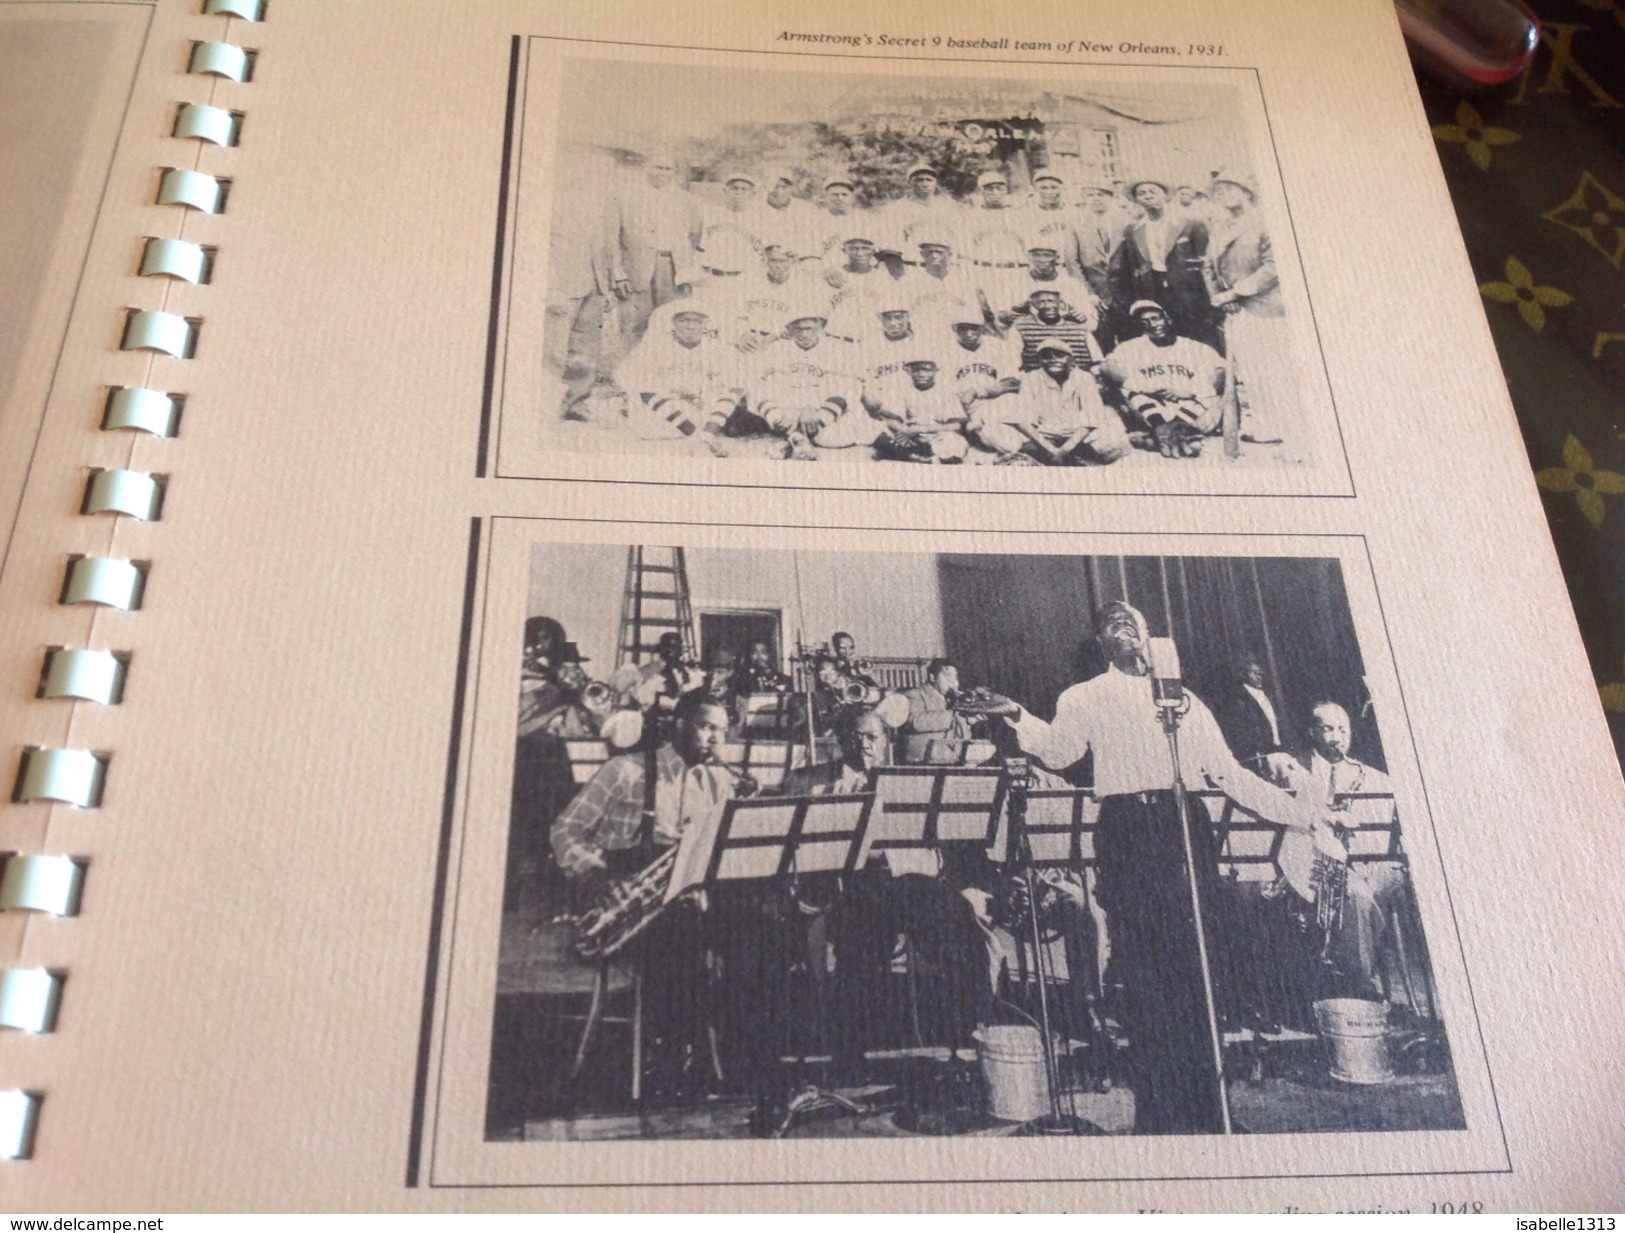 Musique partition Louis Armstrong song book trumpet trompette édition treasury en l état